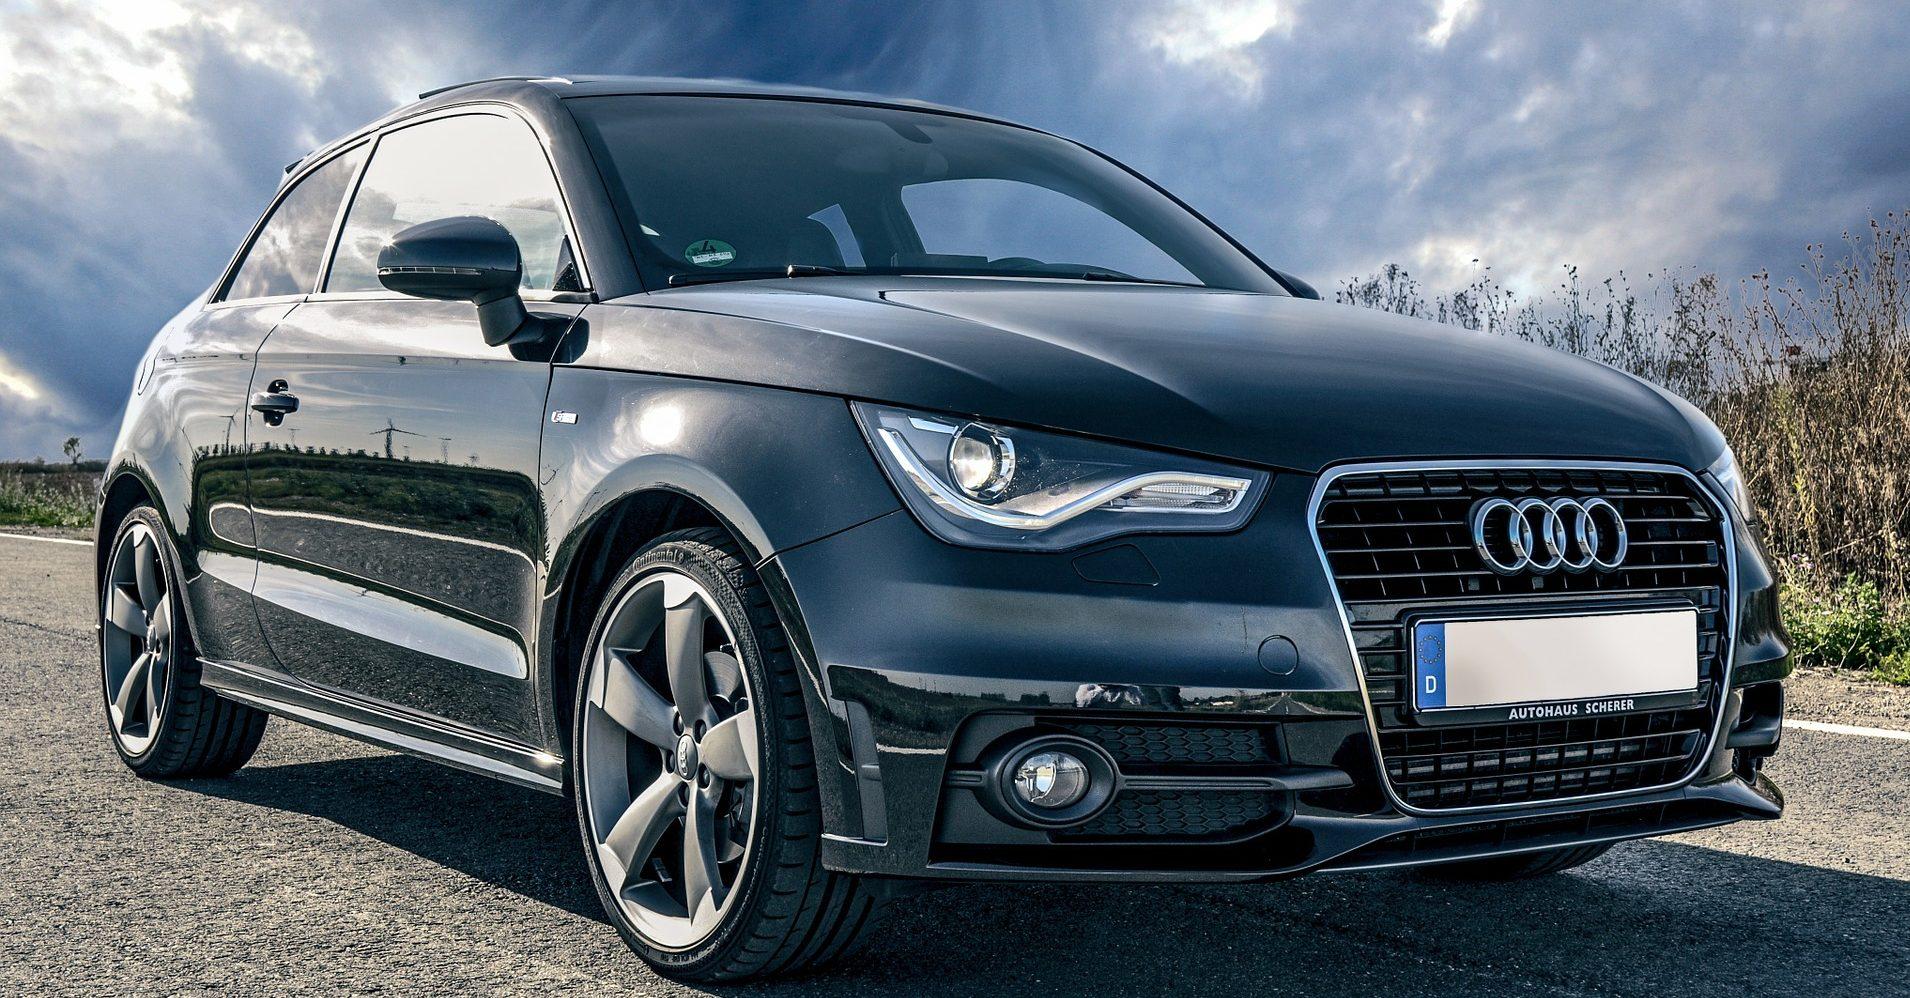 Profeco alerta por fallas en dos vehículos marca Audi que ponen en riesgo la seguridad